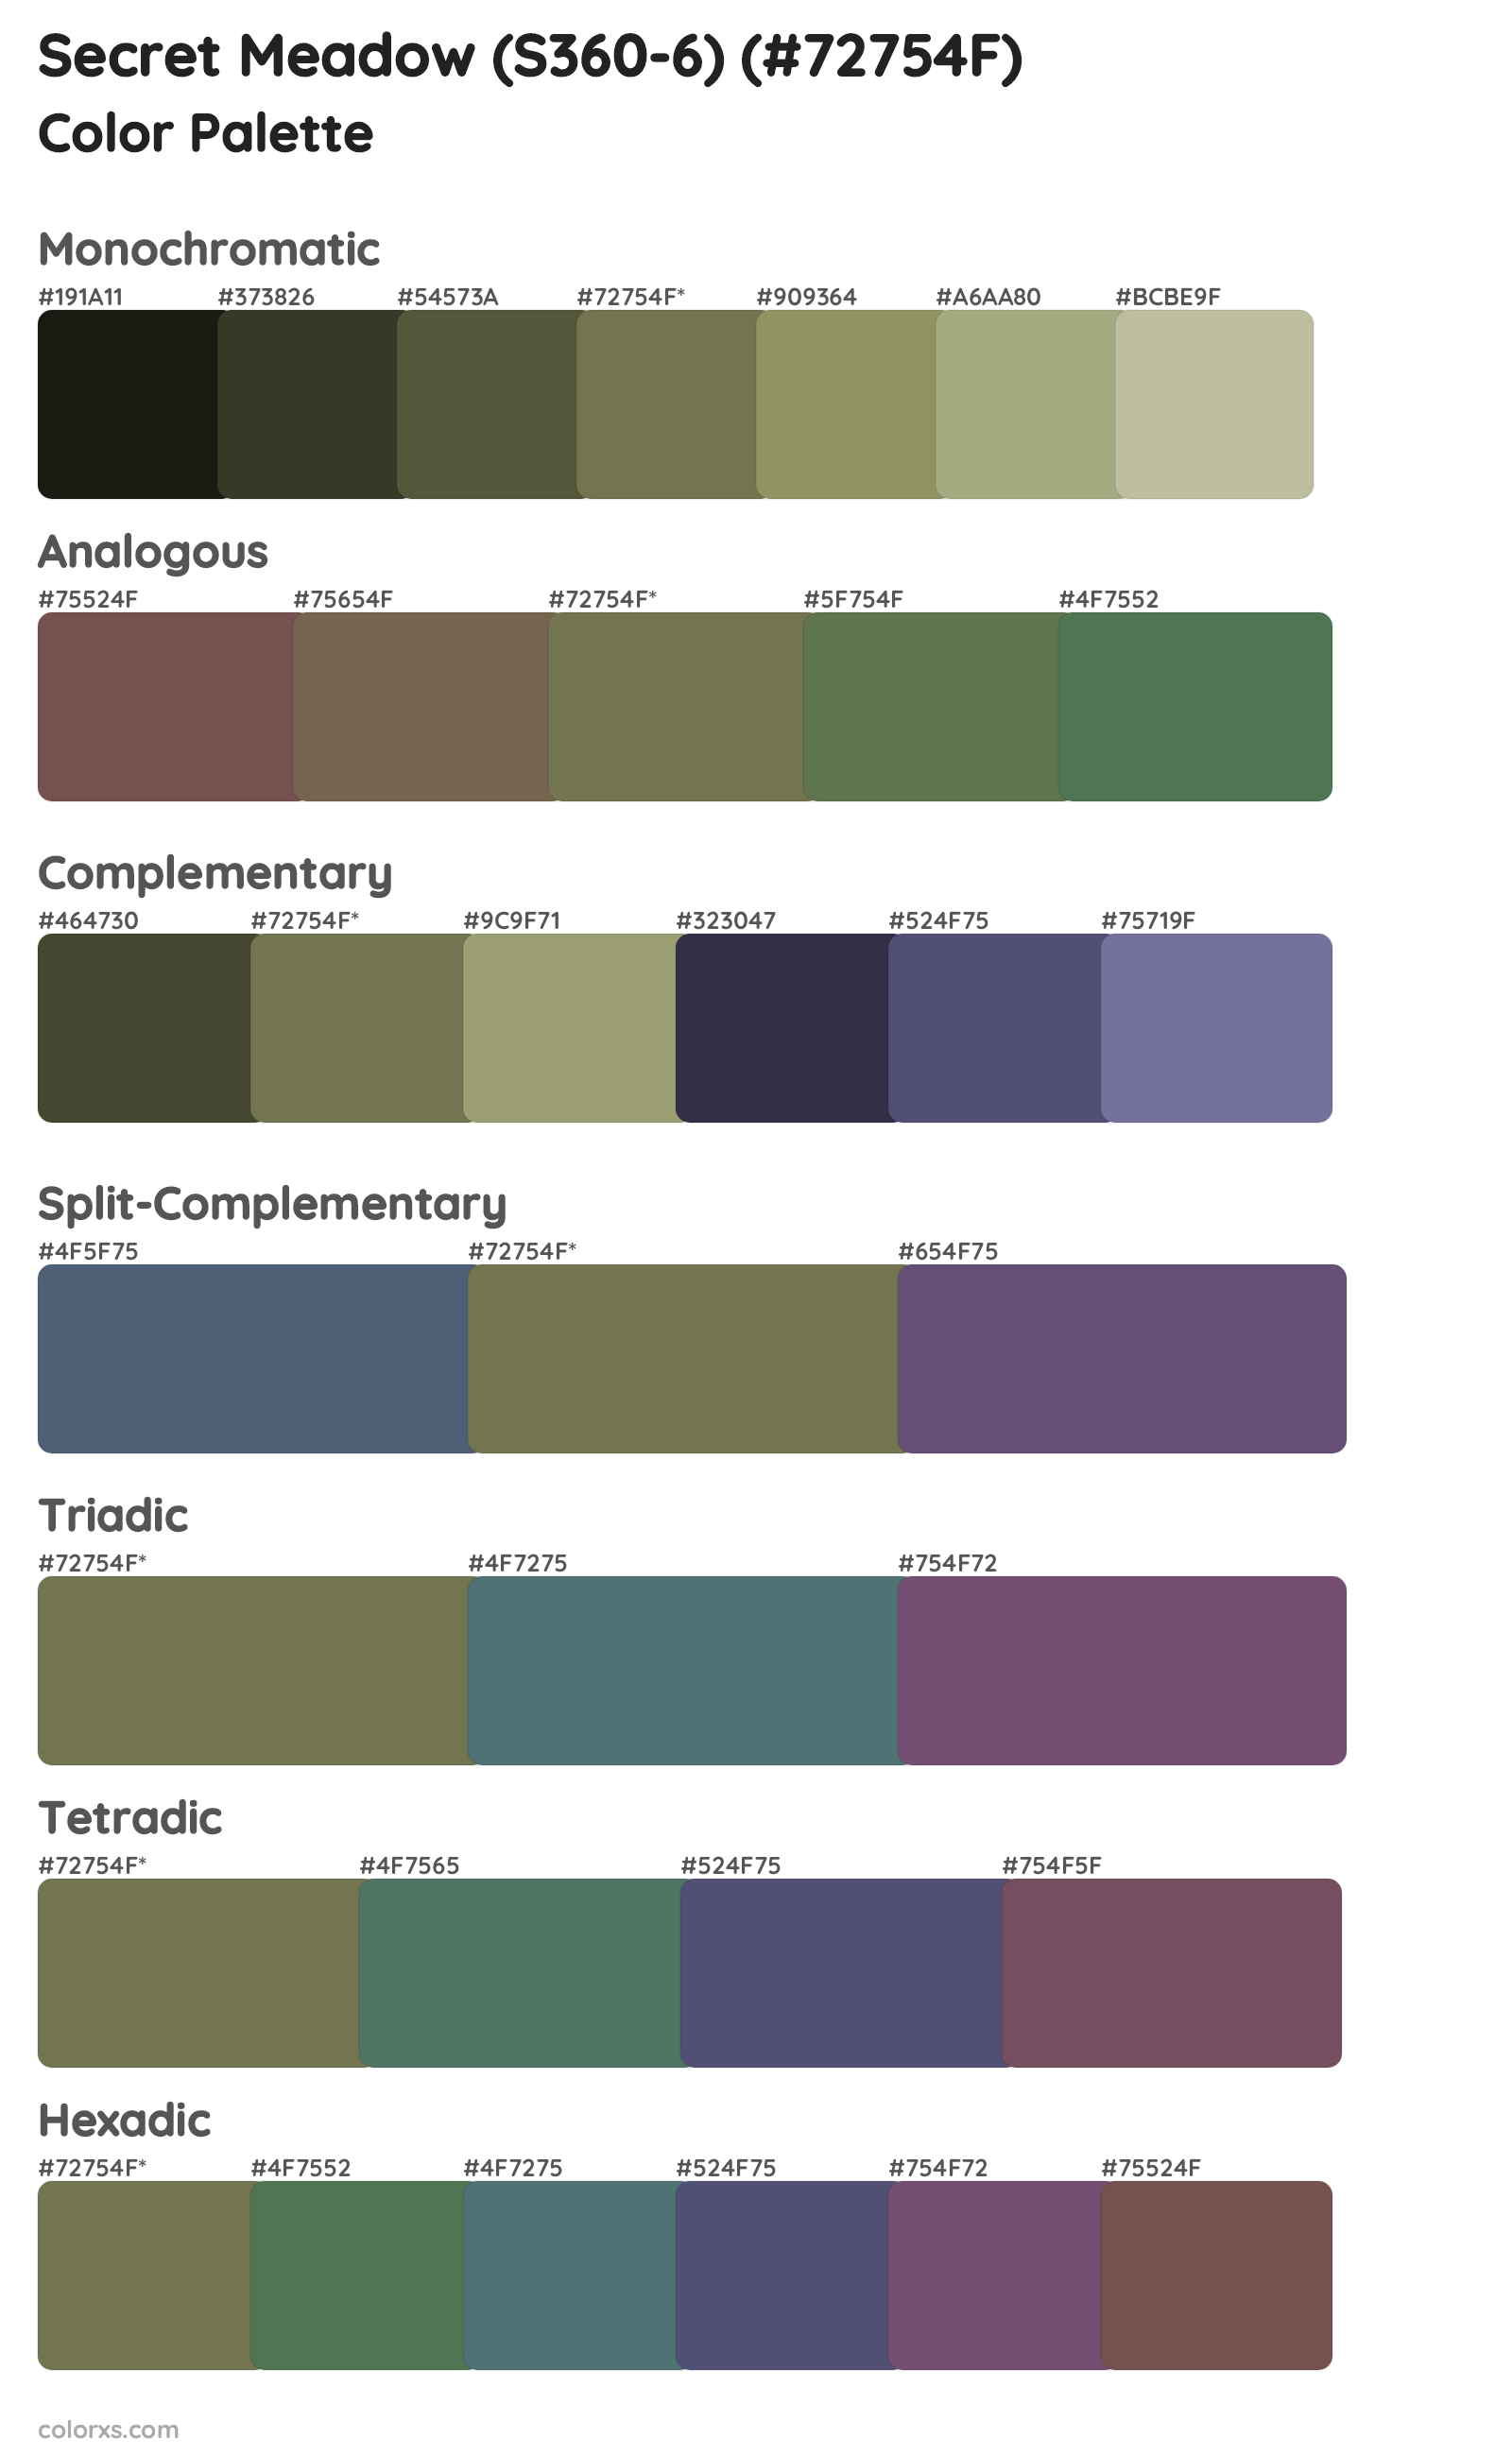 Secret Meadow (S360-6) Color Scheme Palettes